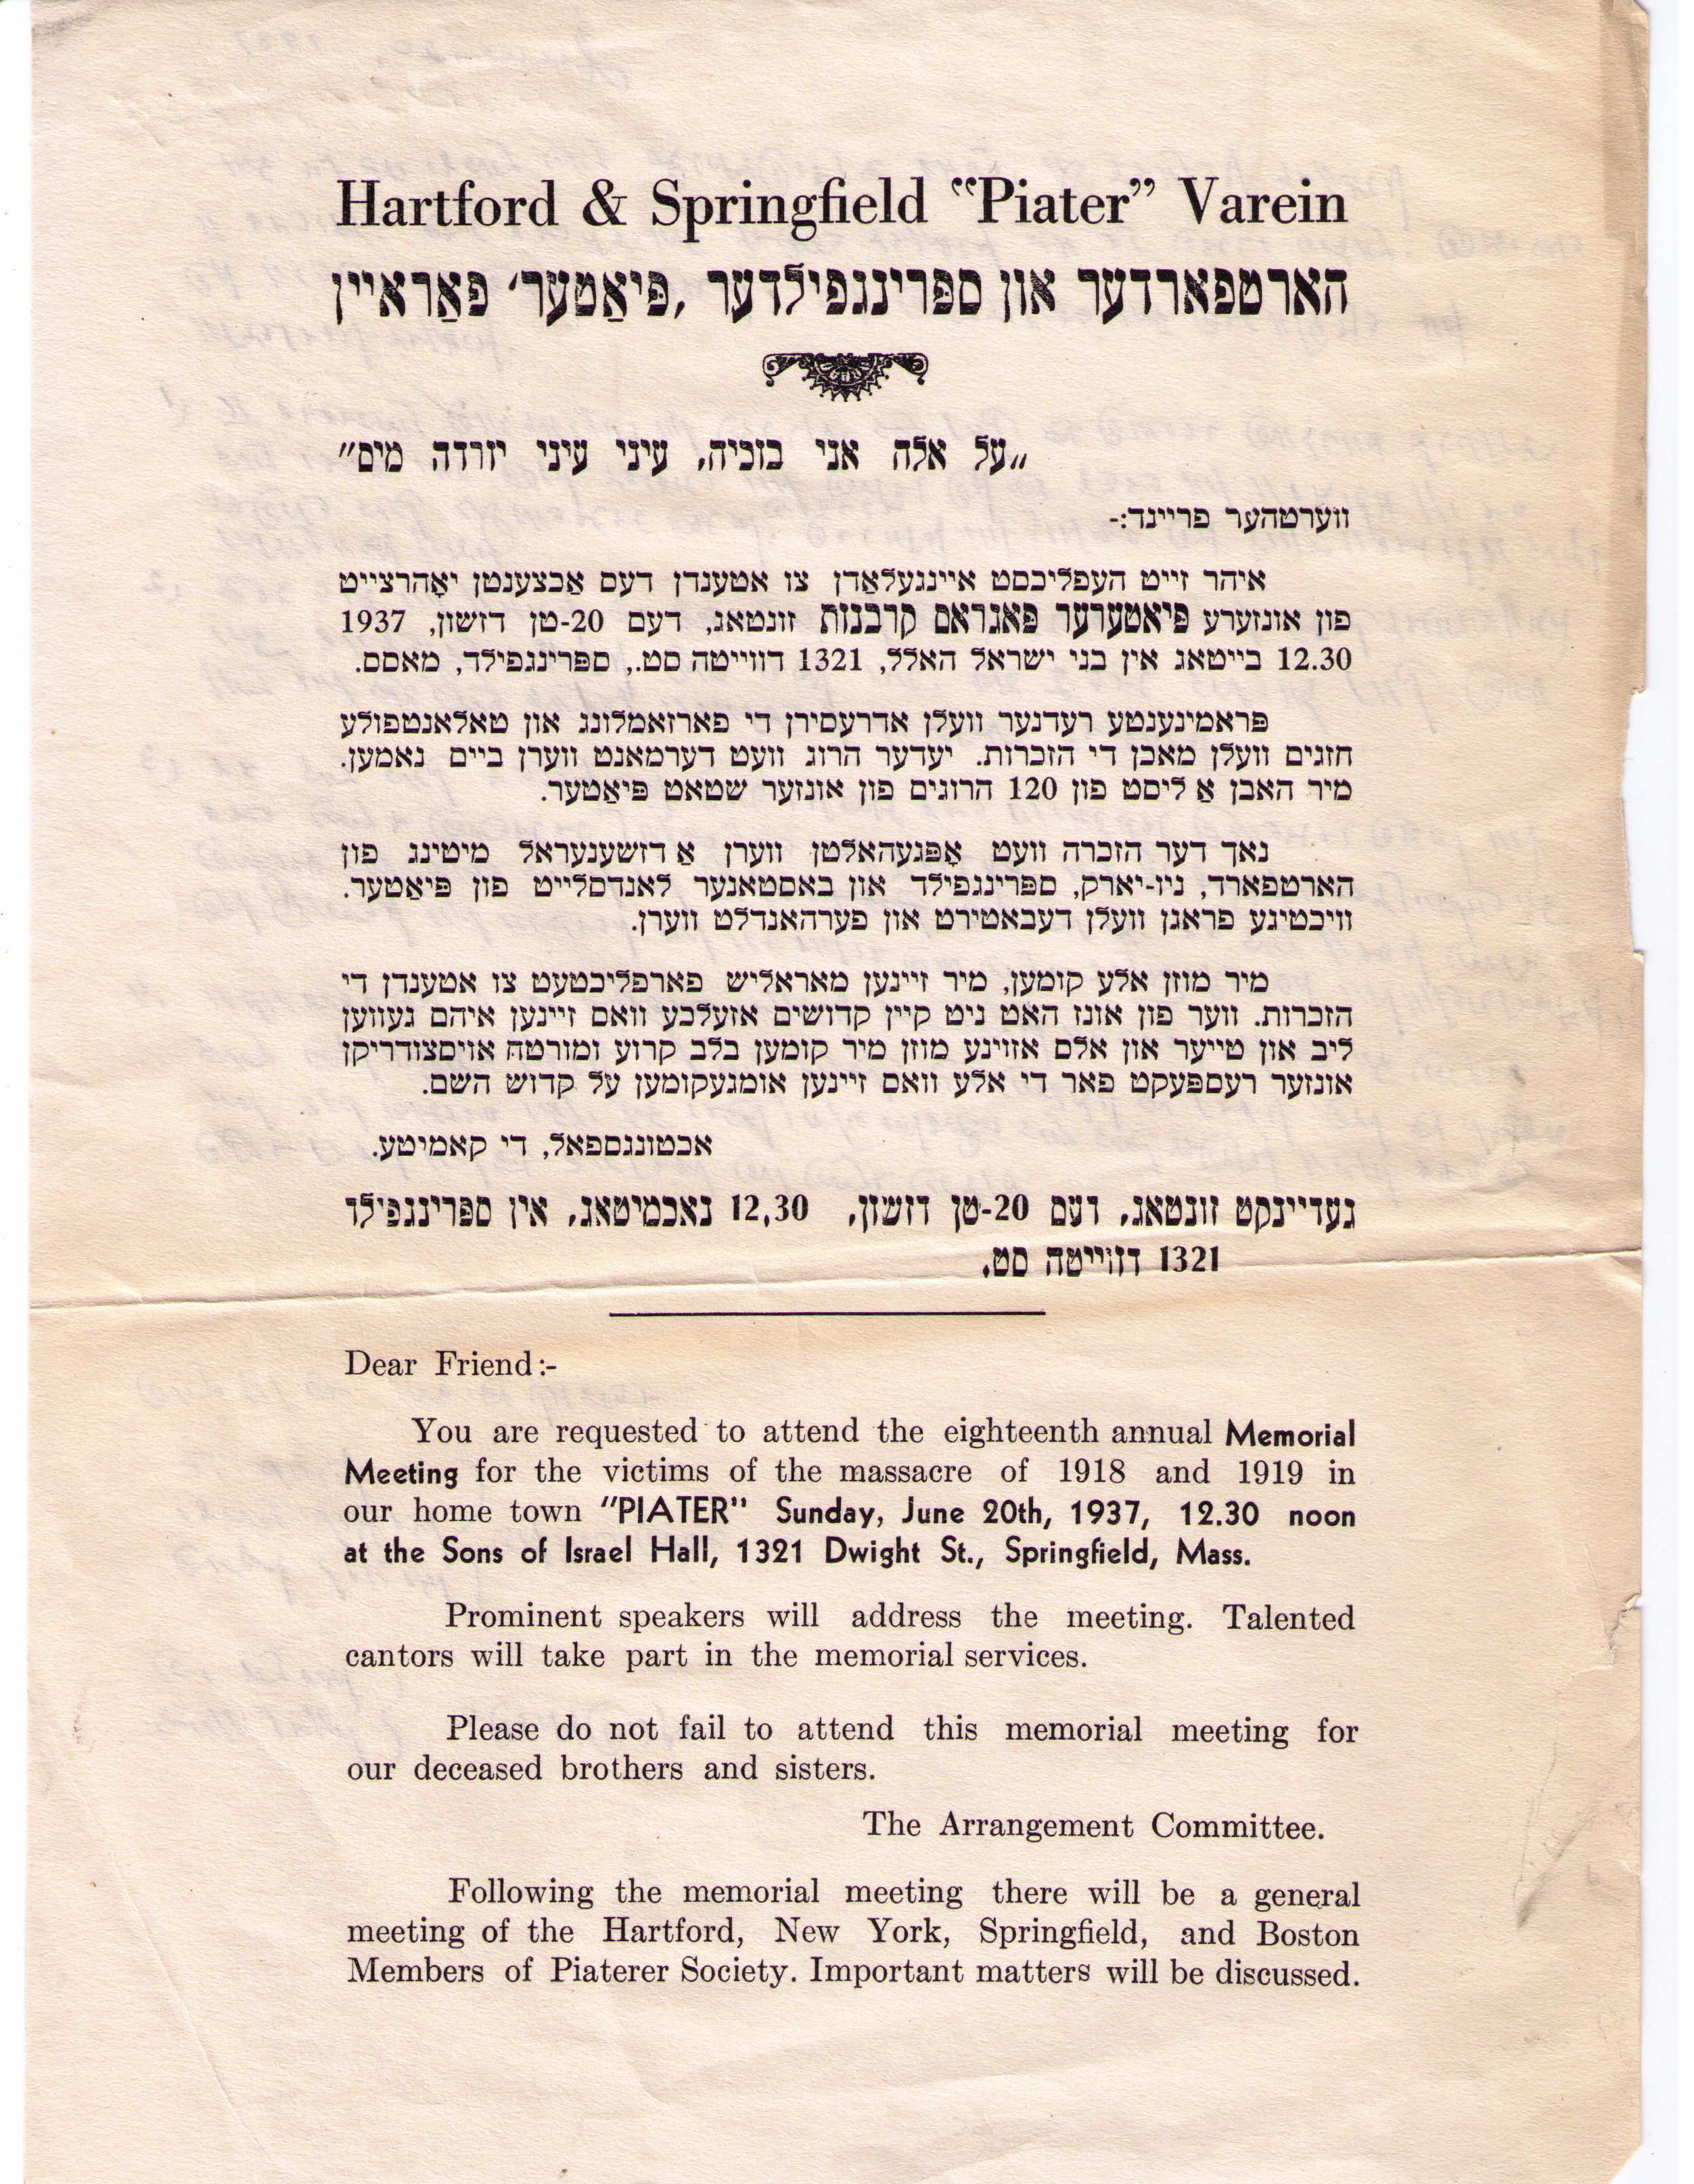 1937 meeting flyer